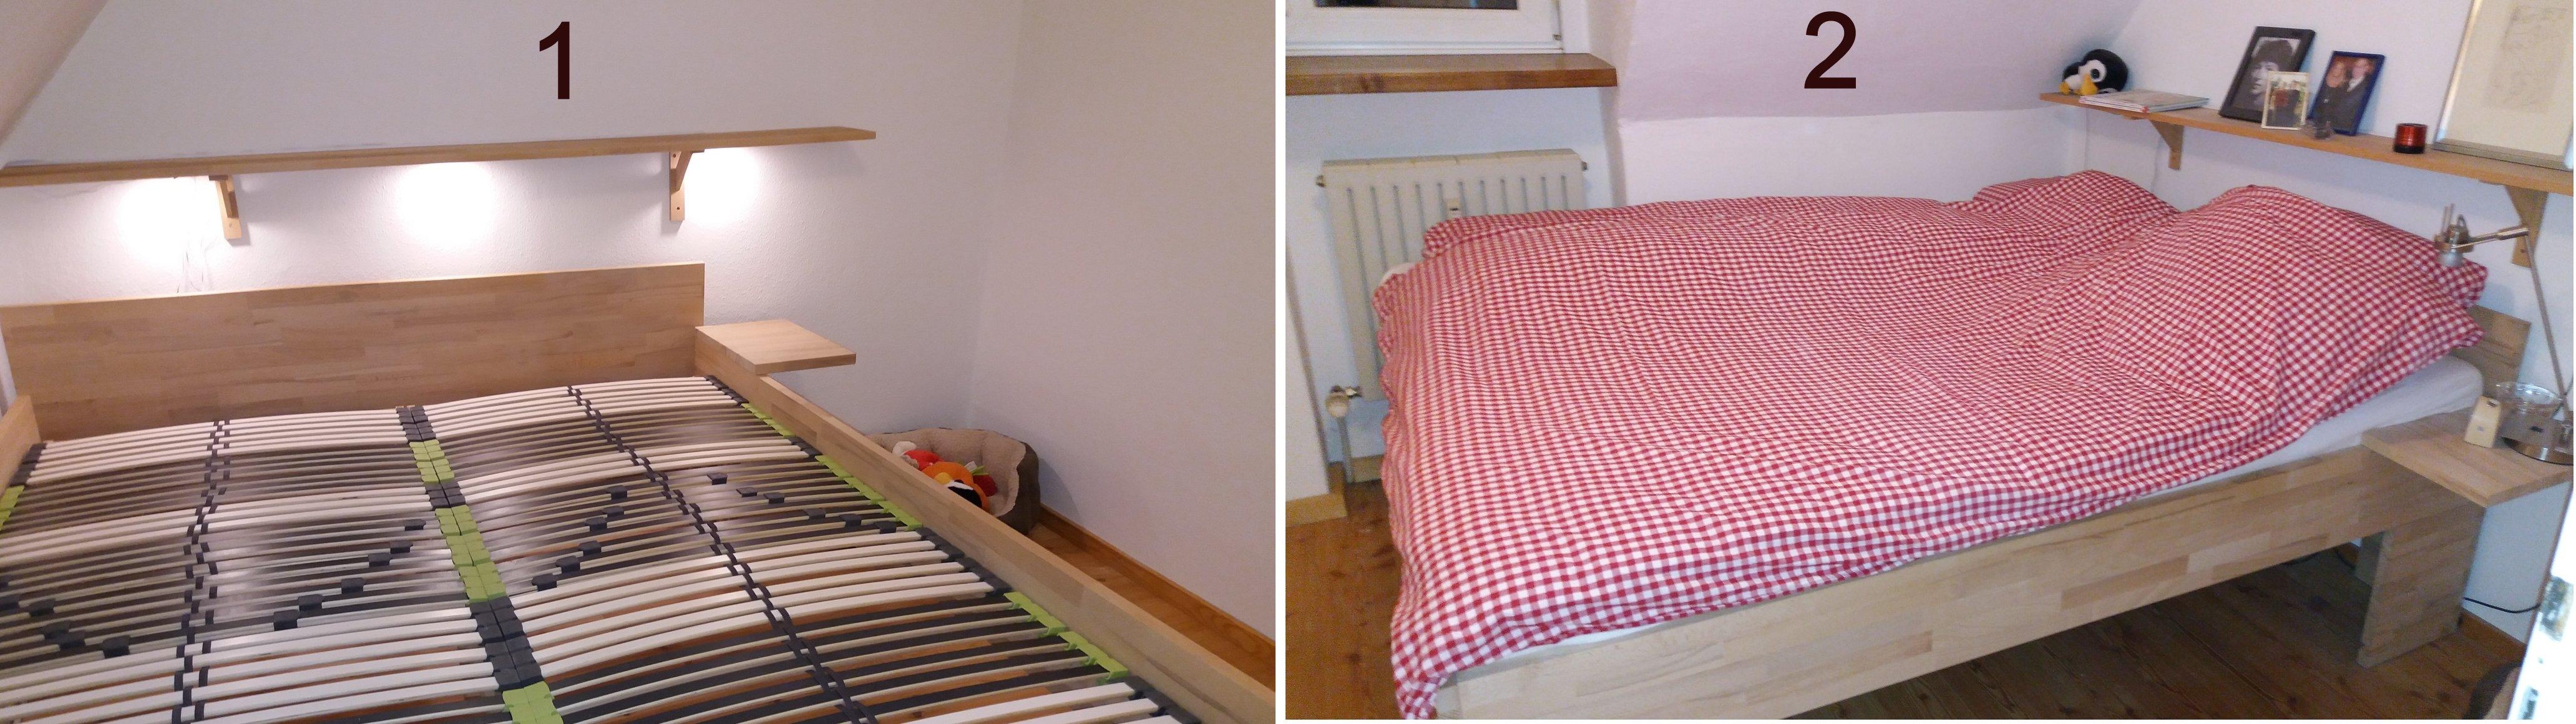 #diymöbel Bett mit samt Ablagen und Beleuchtung unter der Dachschräge - 30 mm Buche, 60 cm hoch